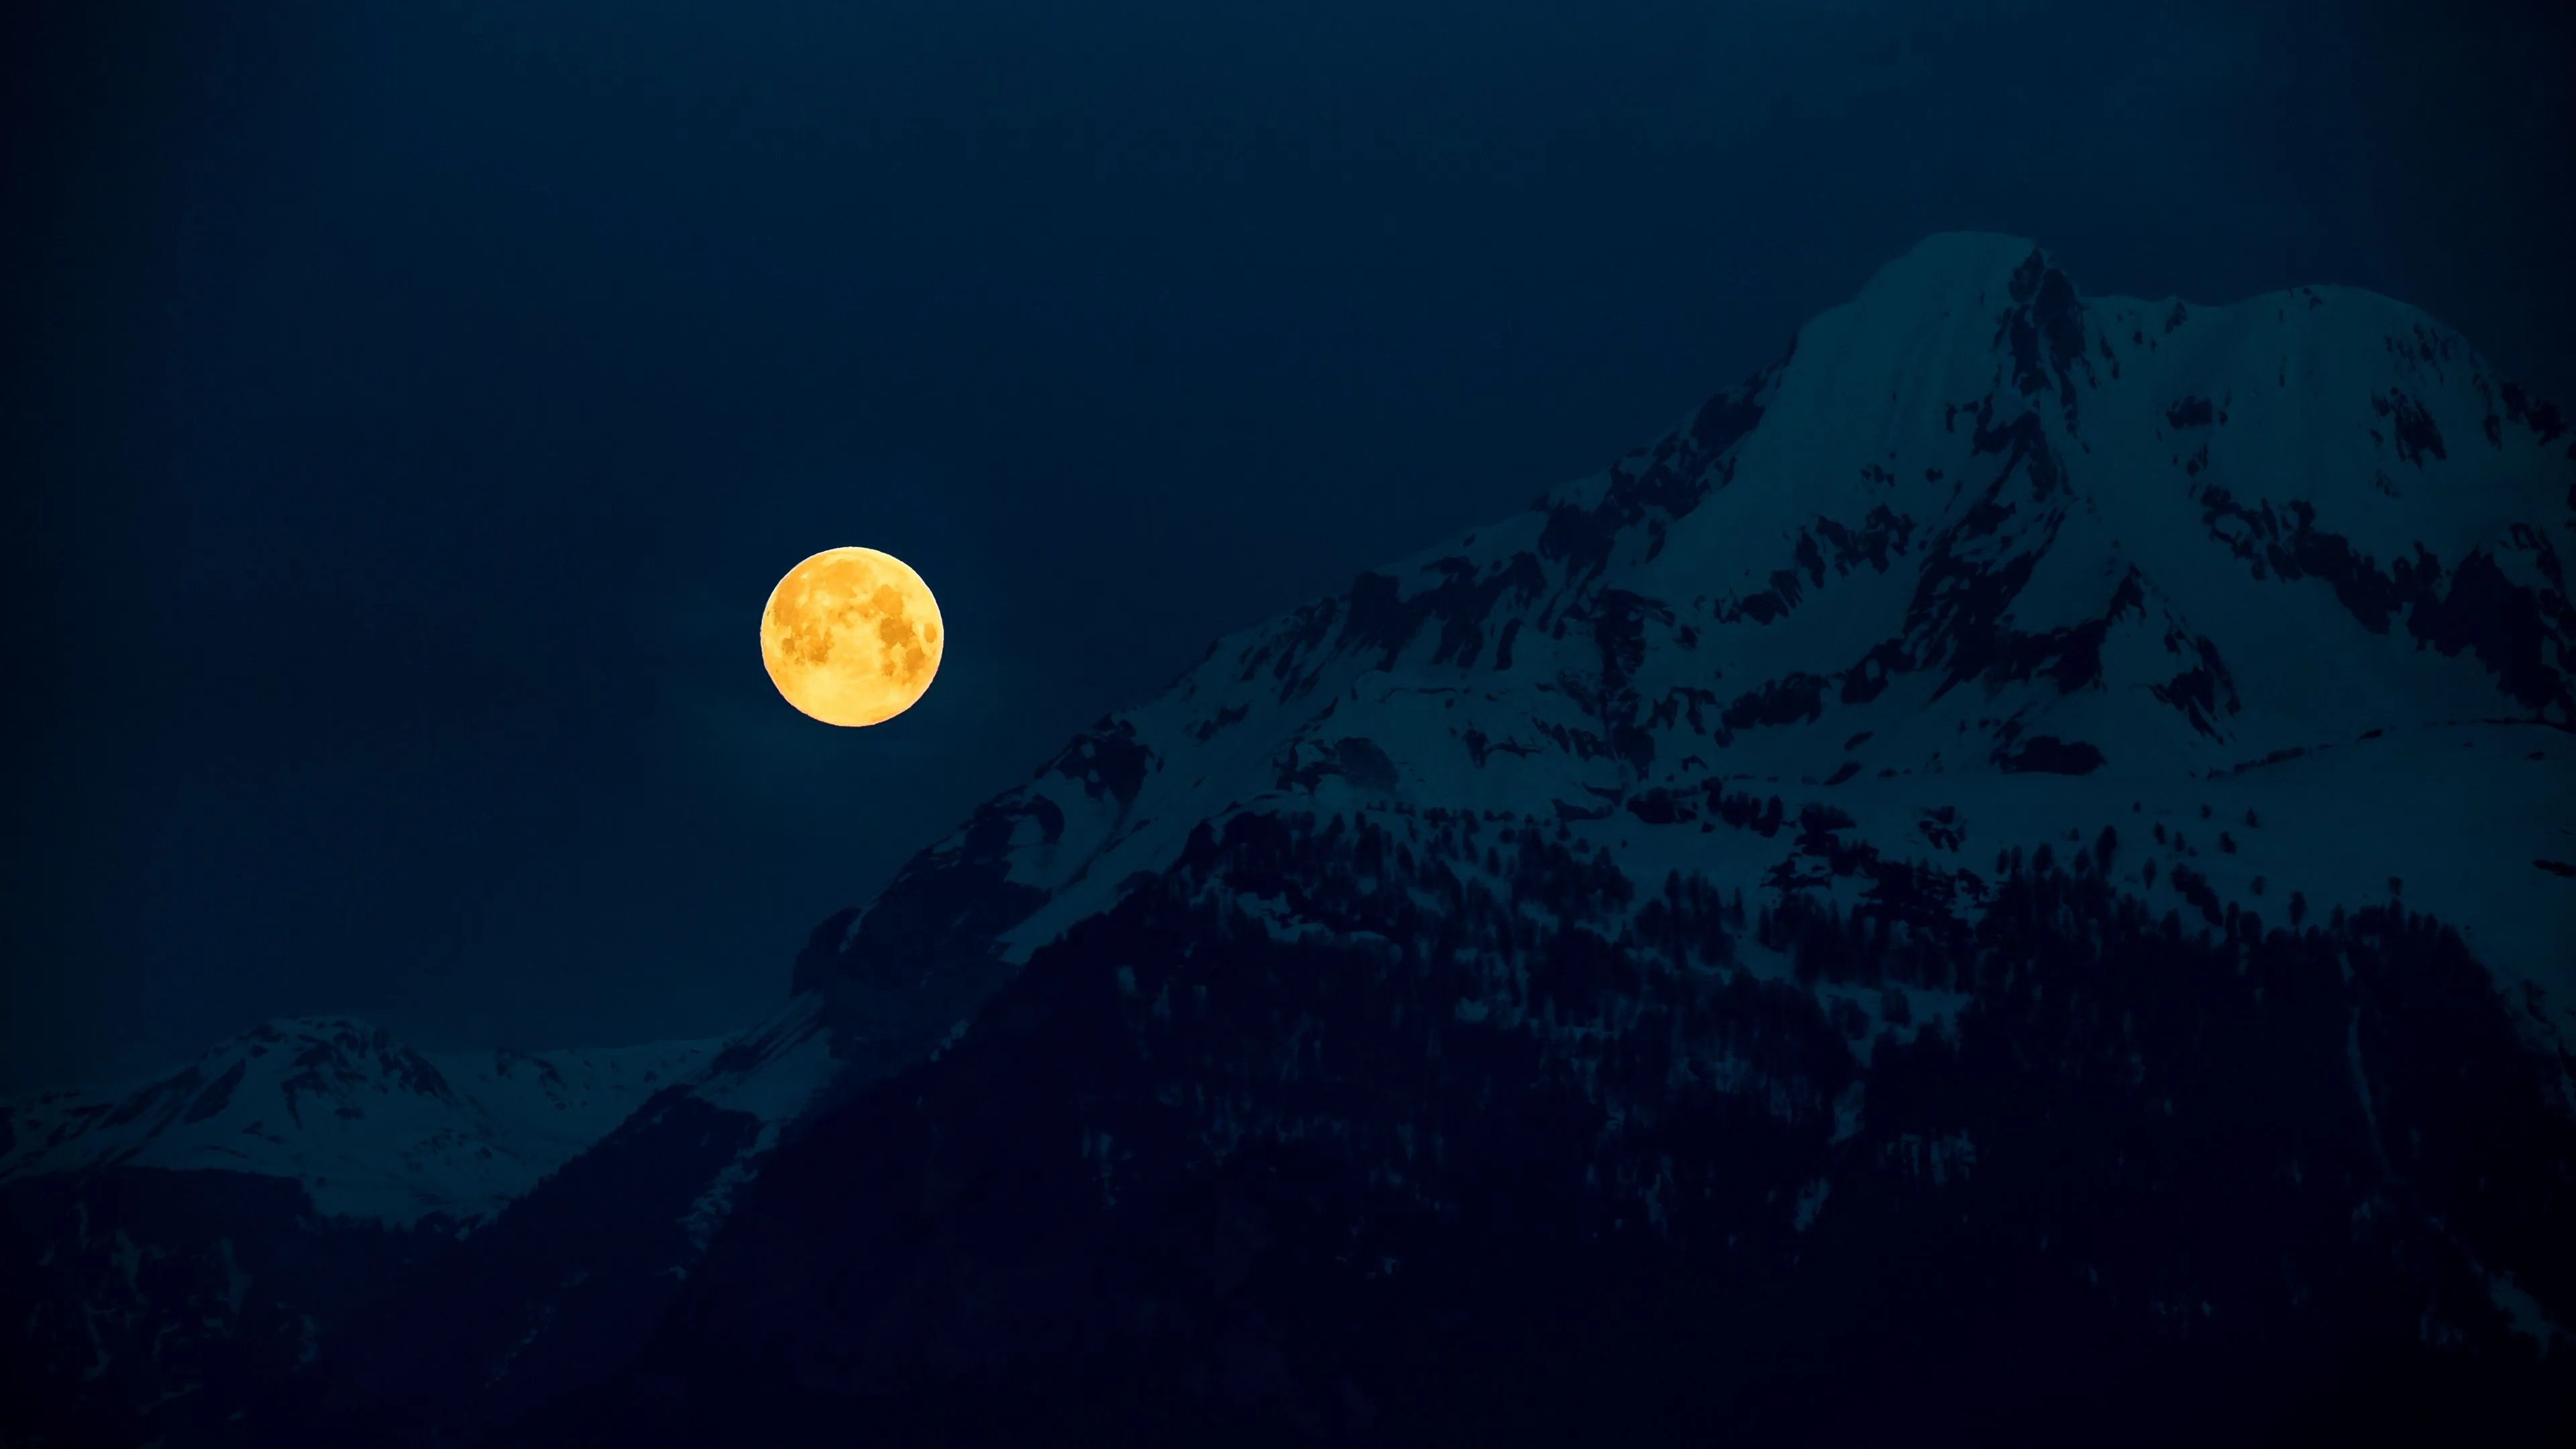 moon mountains night full moon moonlight 4k 1691849539